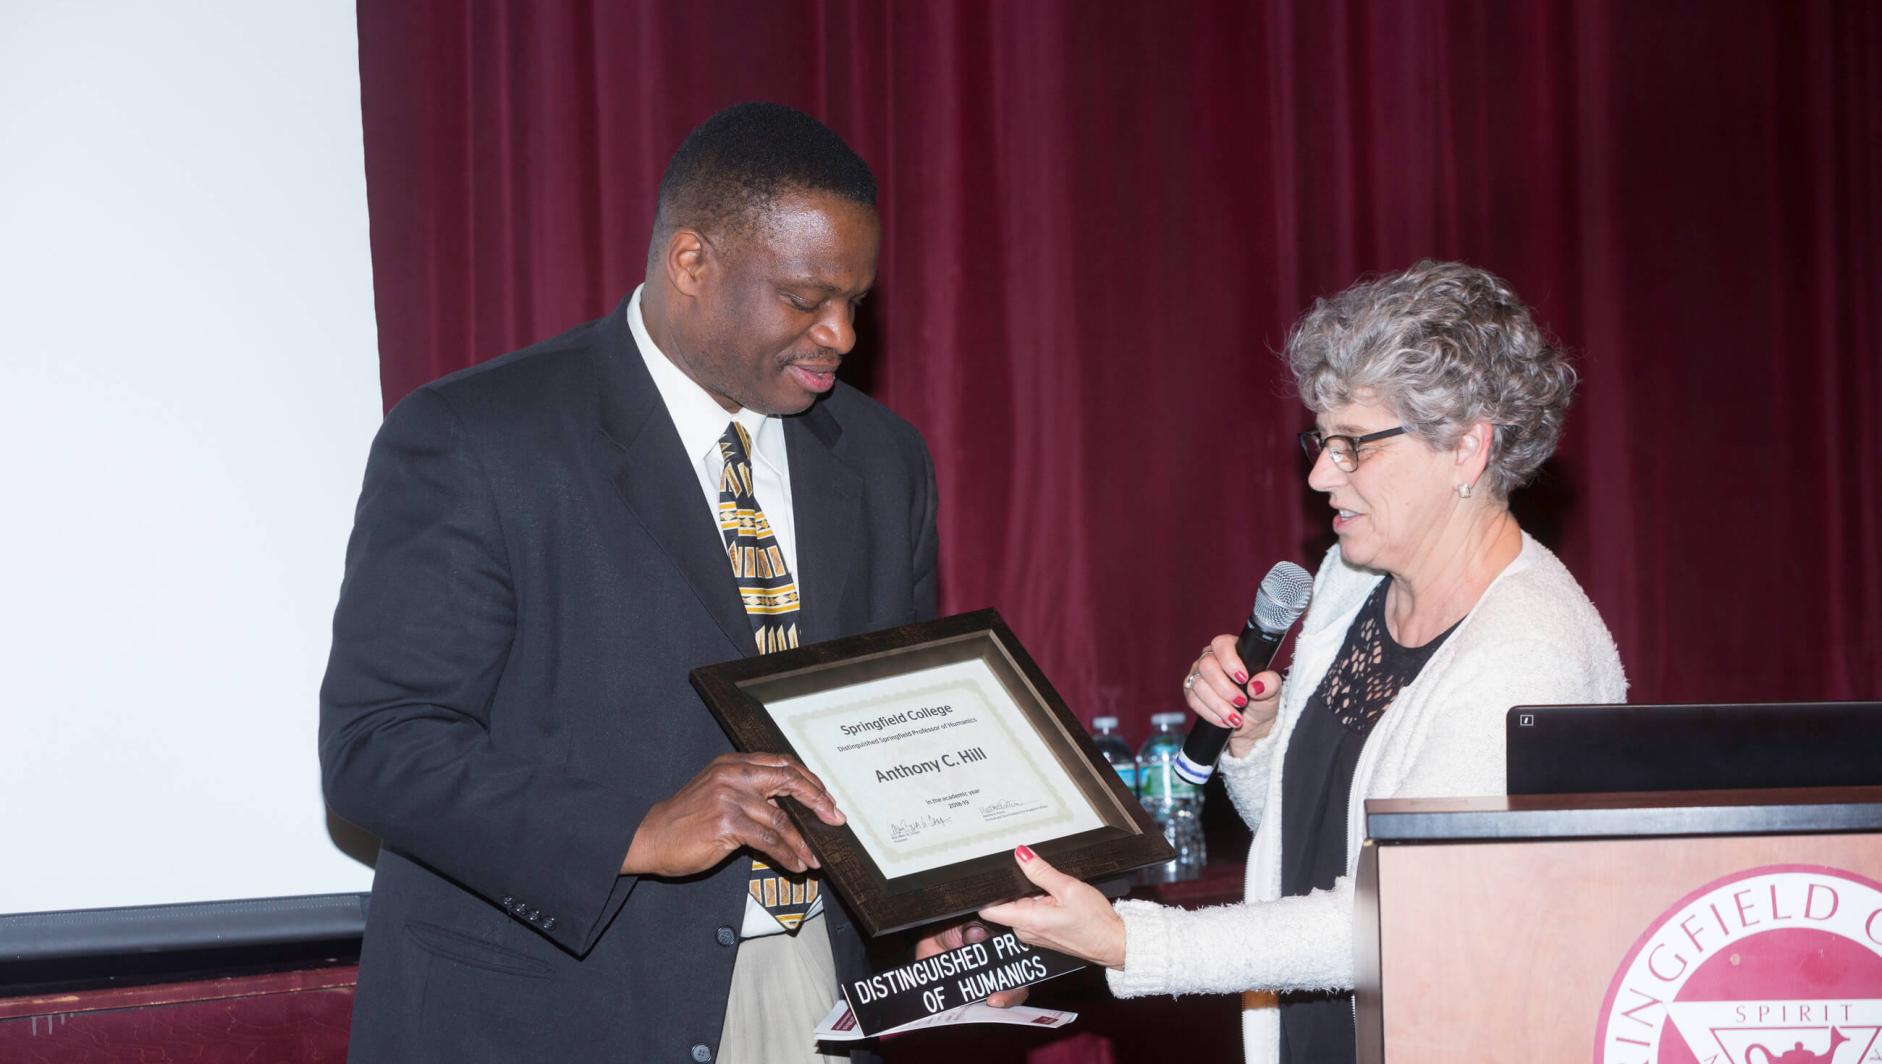 Dr Hill receiving an award. 